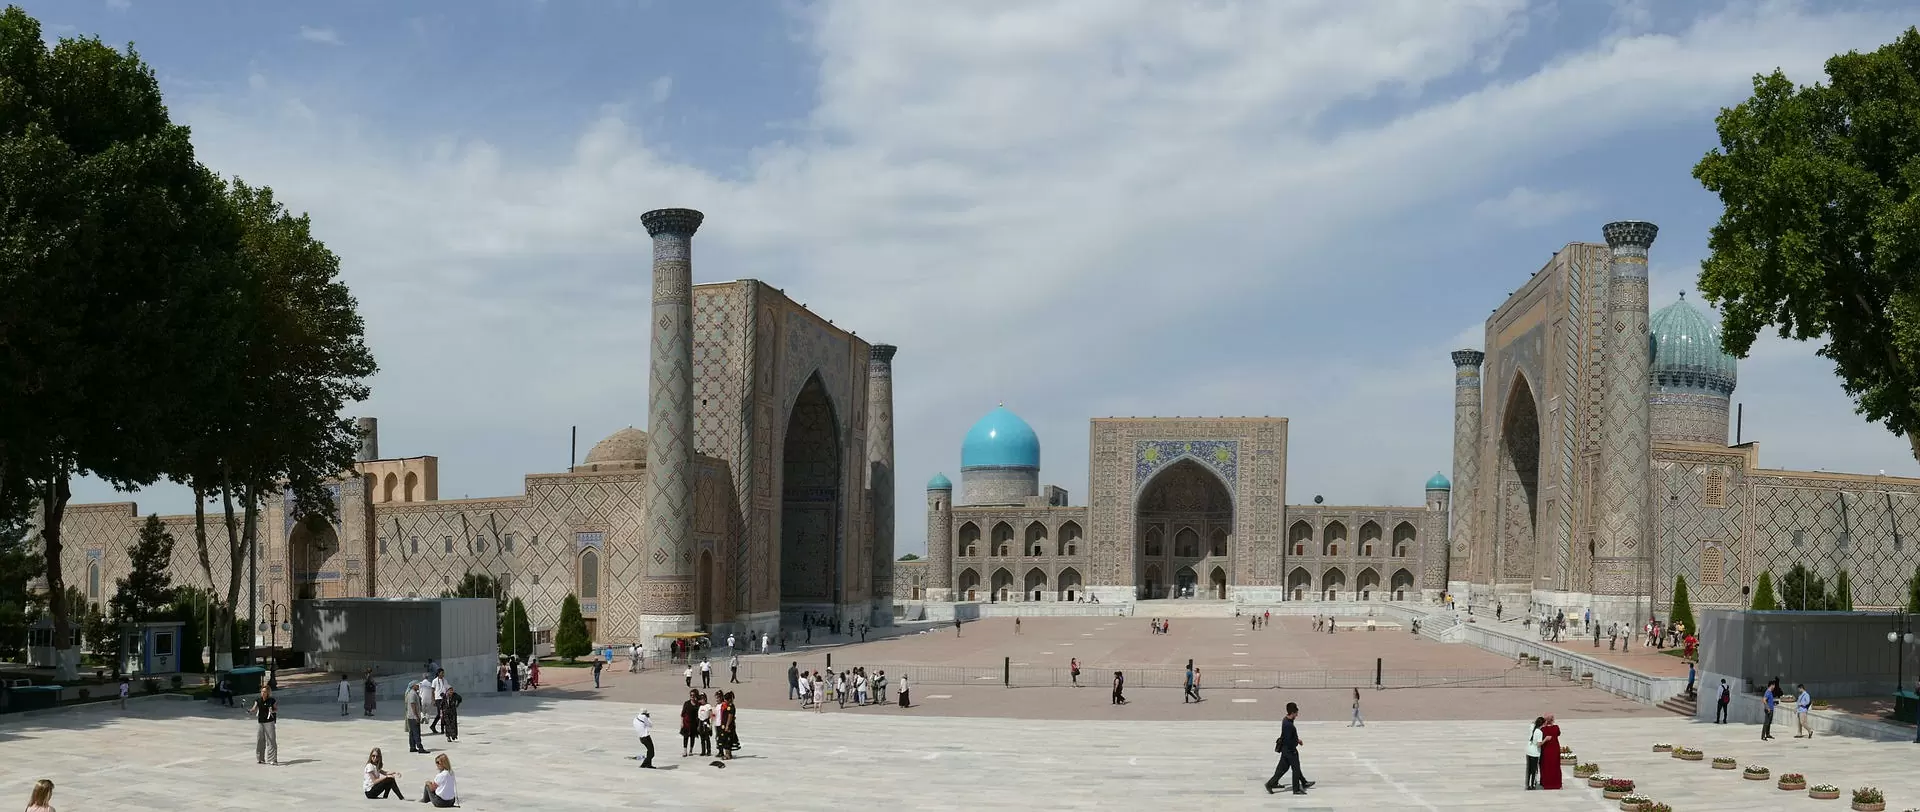 Достопримечательность Узбекистана